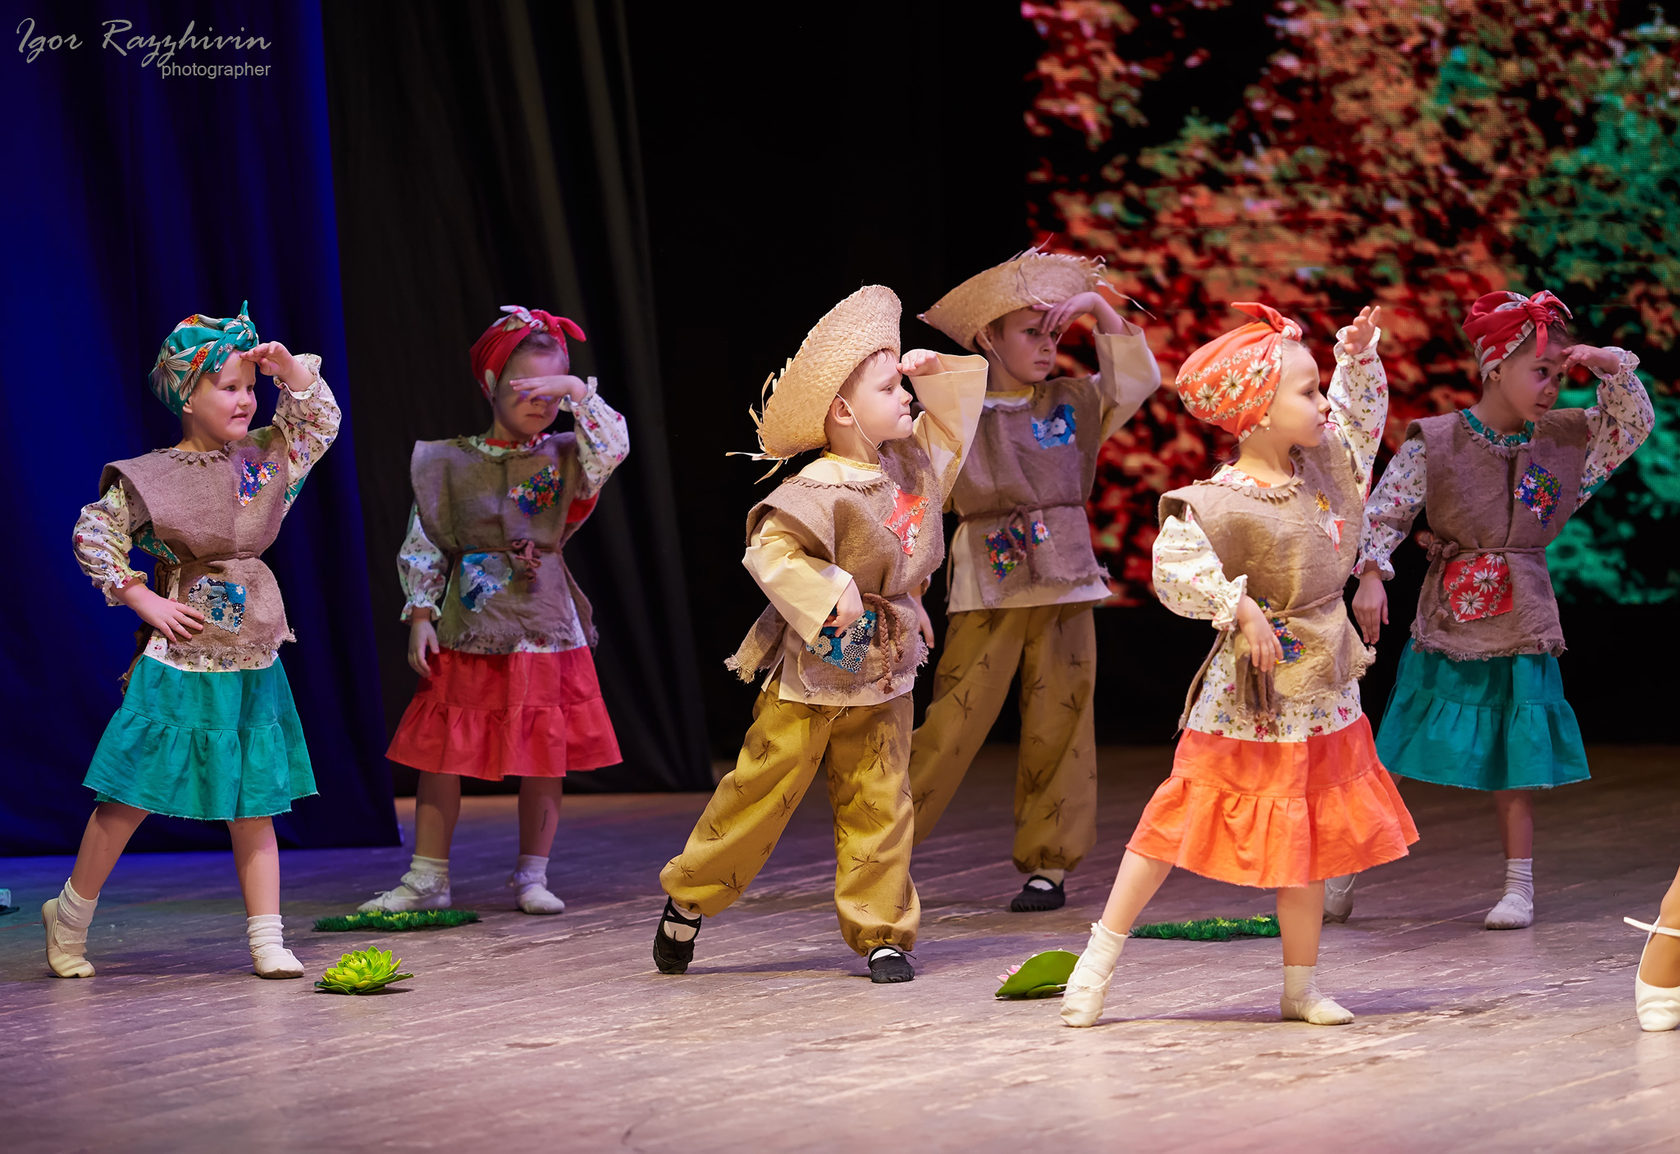 Дворец культуры химиков объявляет дополнительный набор детей в возрасте от 7-12 лет в инклюзивную хореографическую группу Народного коллектива Ансамбль народного танца «Разгуляй».